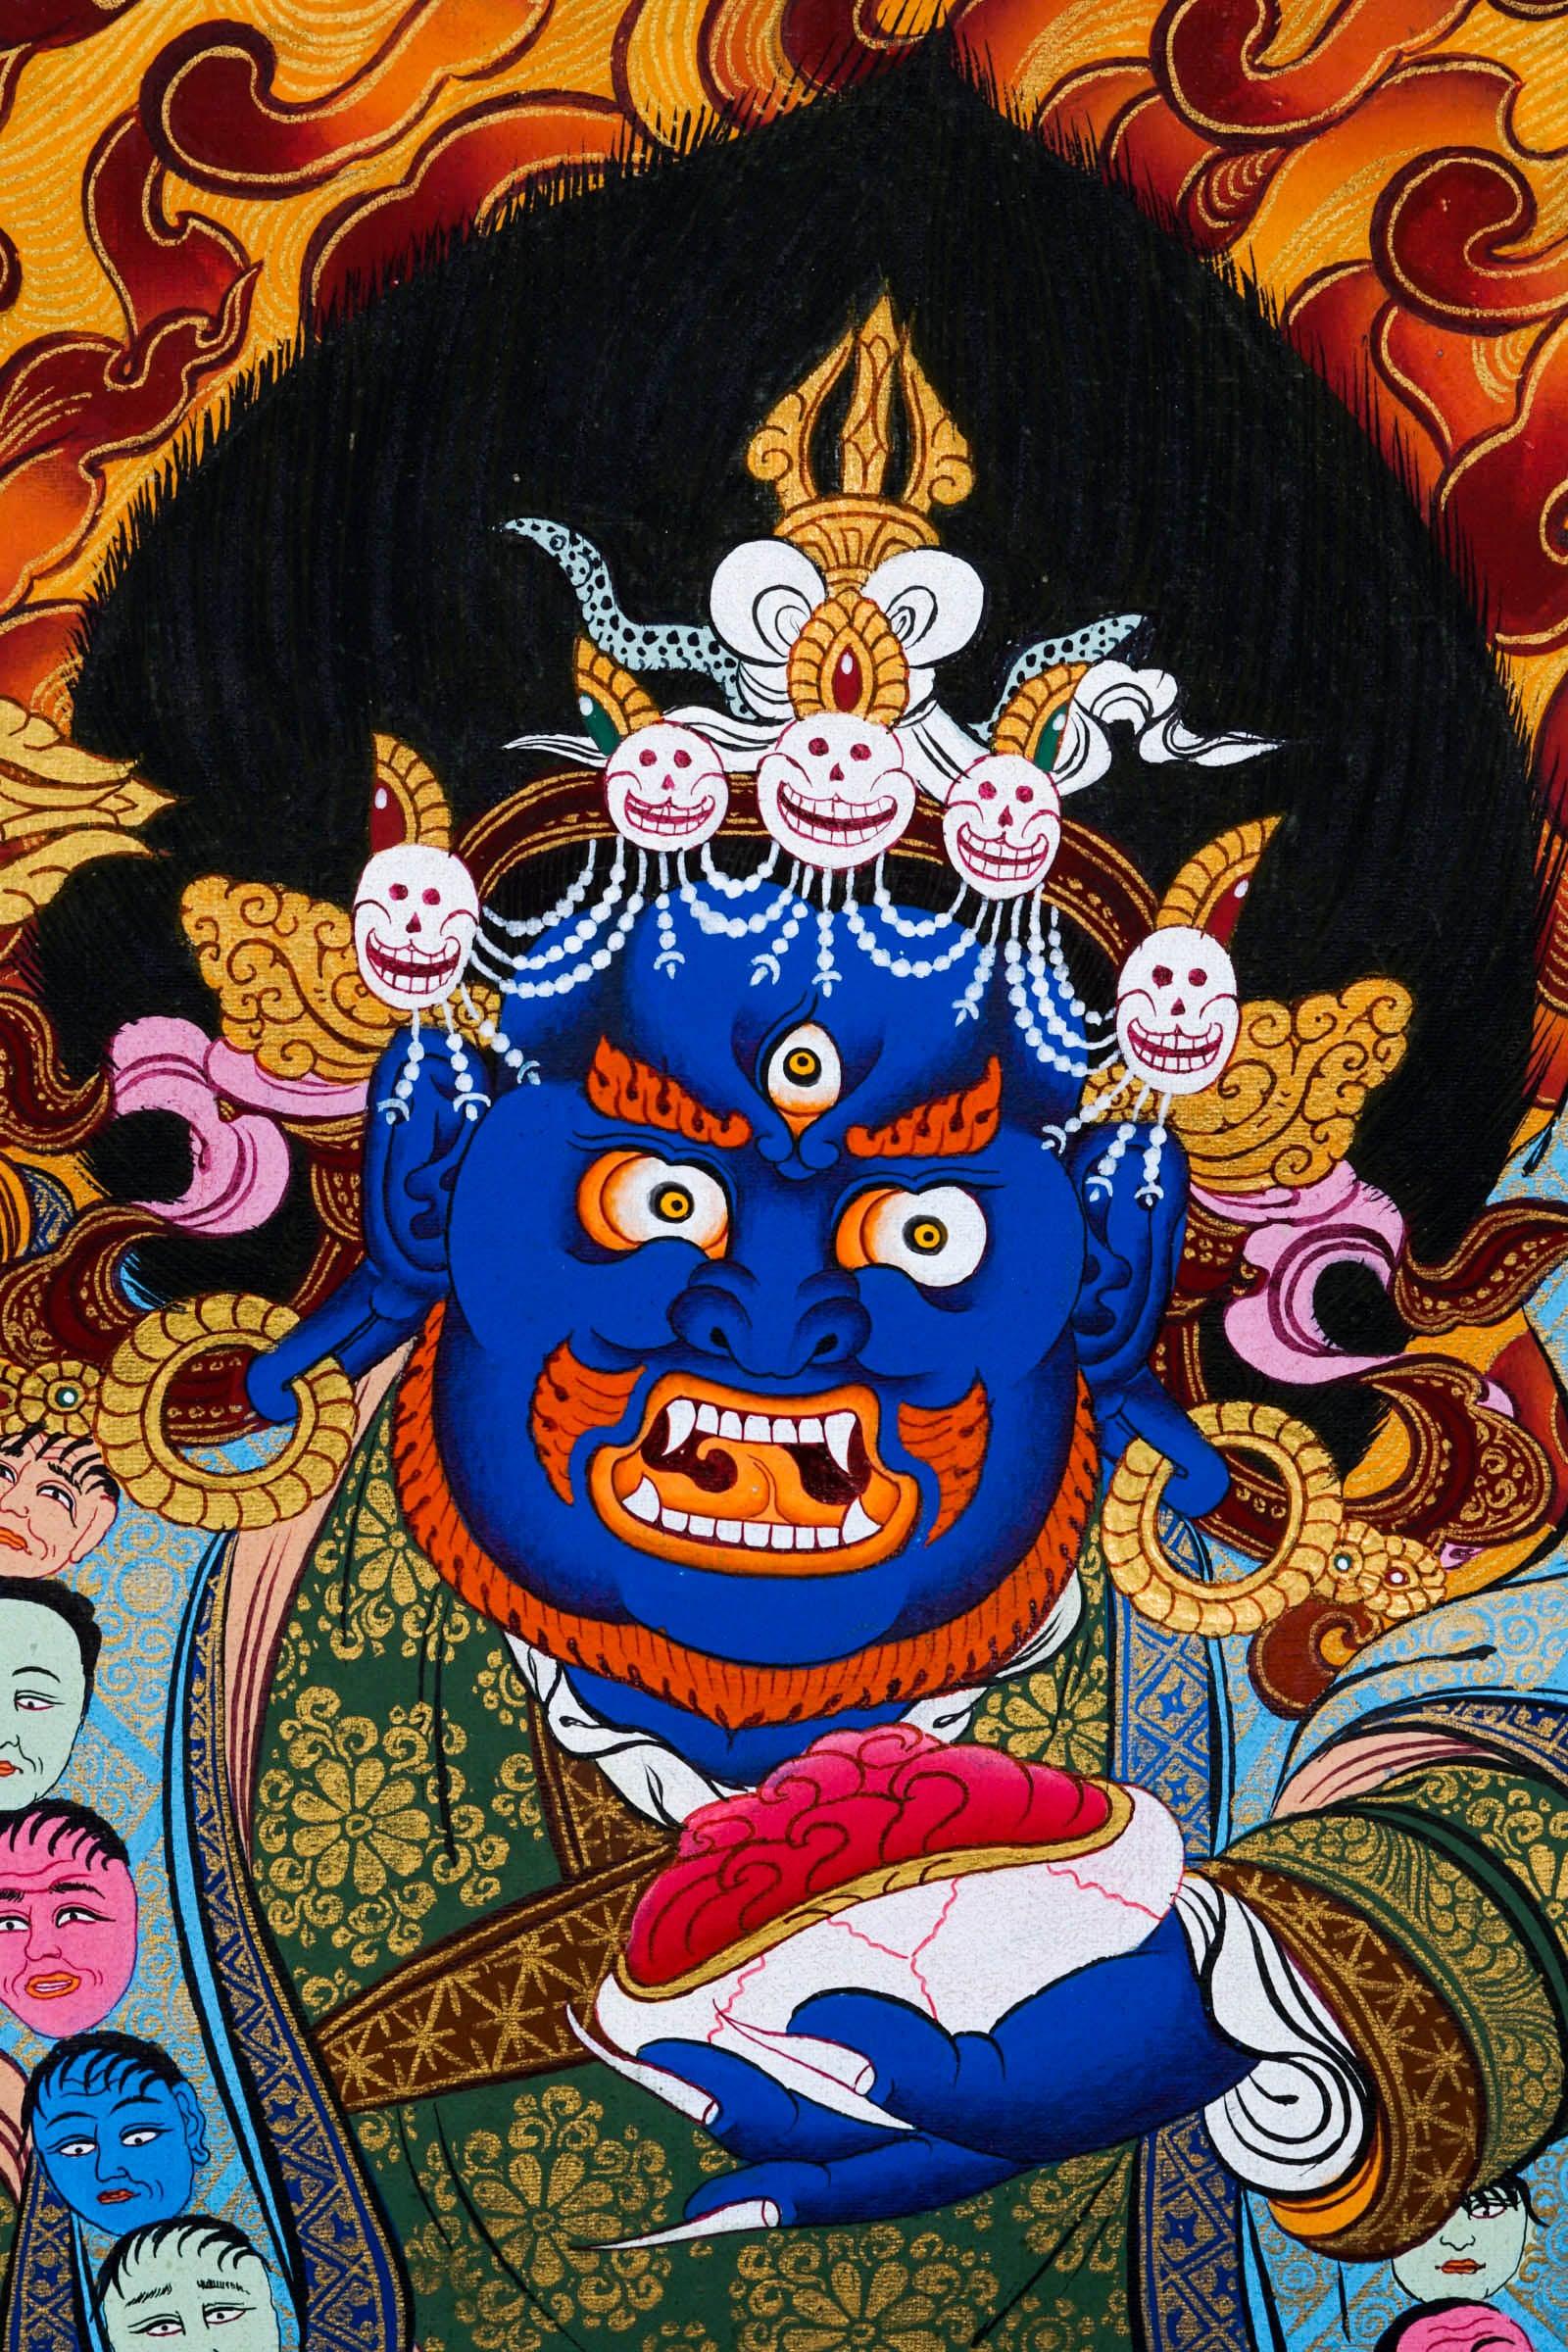 Mahakala Thangka Painting - Himalayas Shop